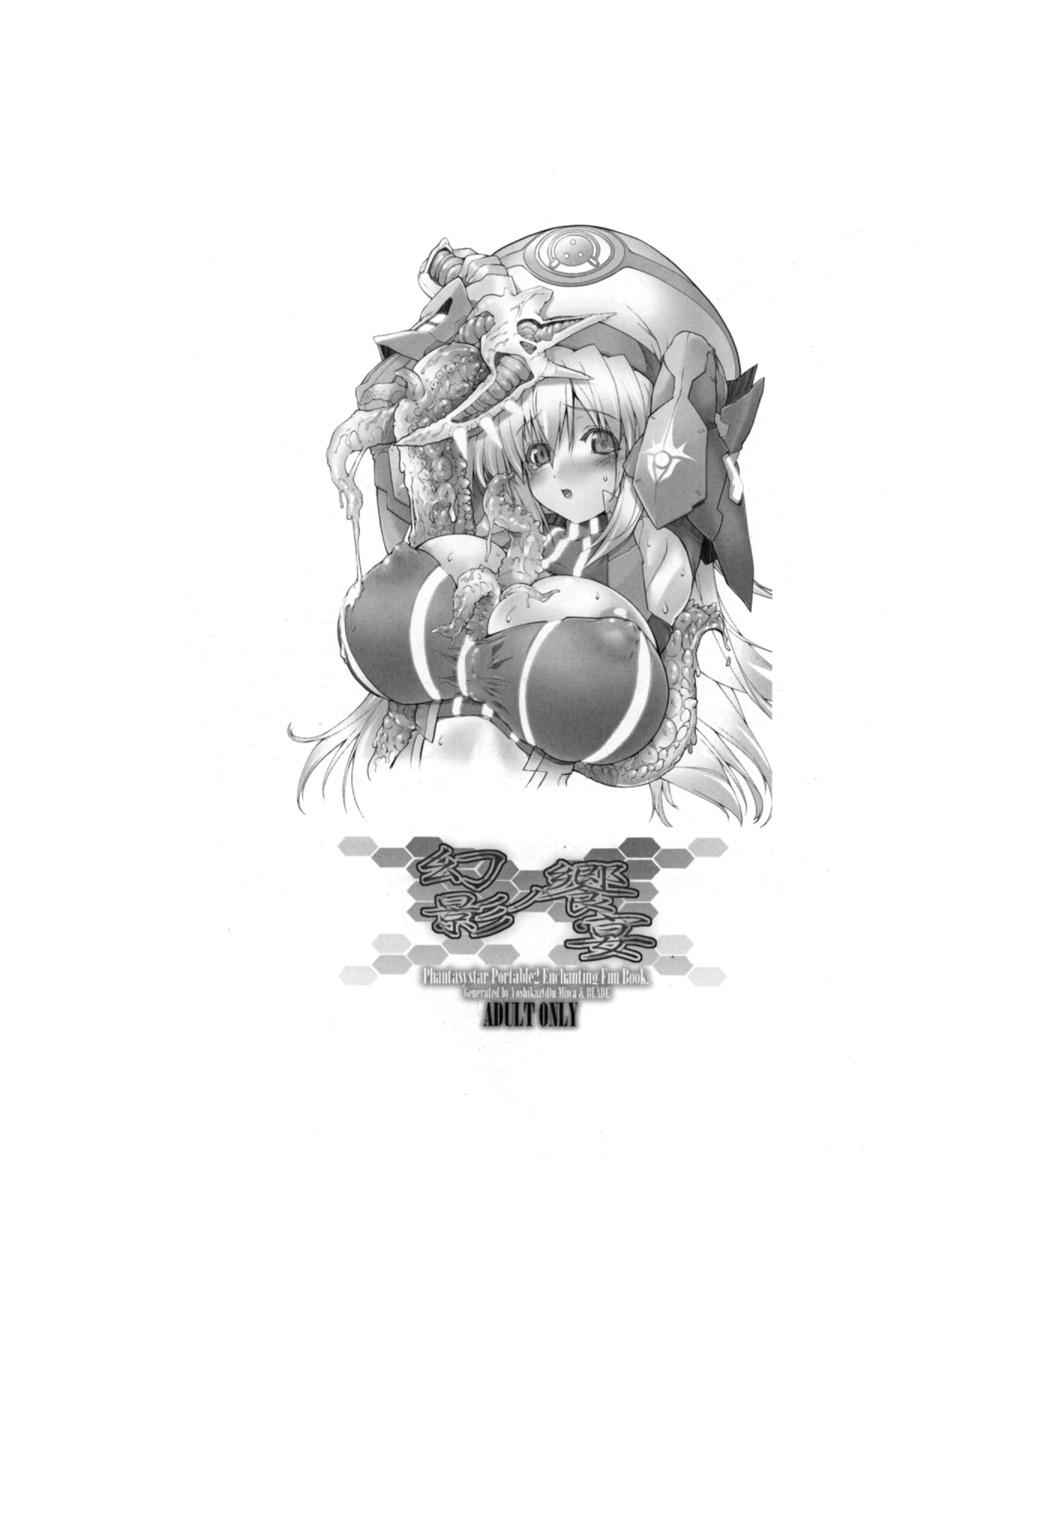 Thief Genei no Kyouen Preview - Phantasy star portable 2 White Girl - Page 4